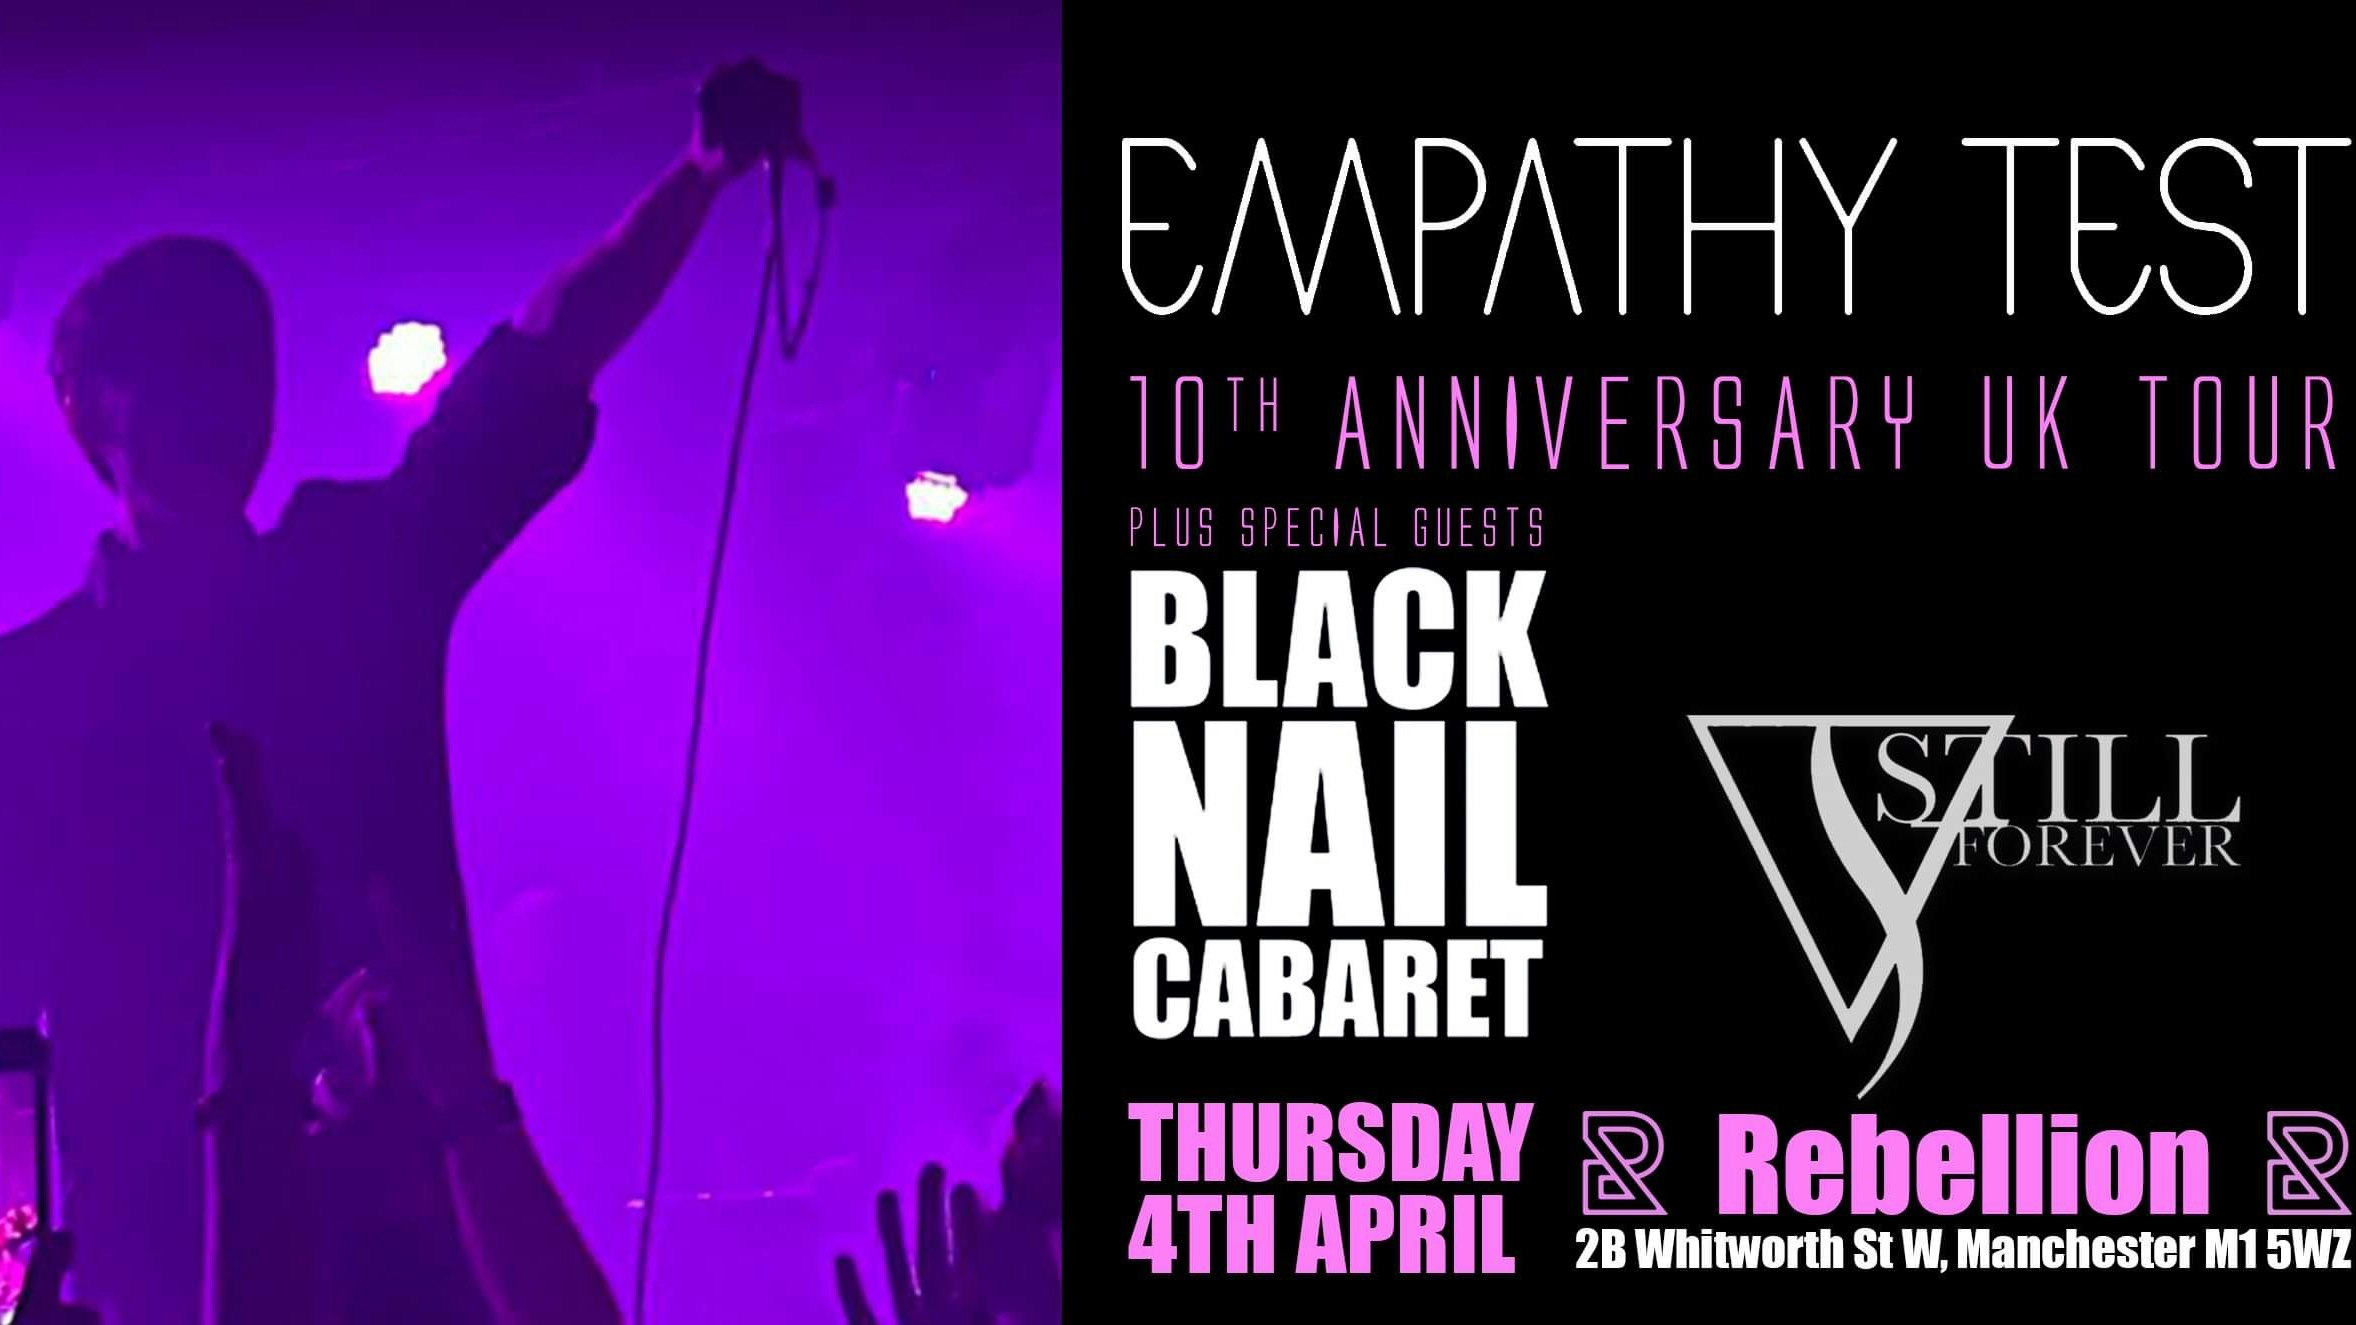 EMPATHY TEST 10th ANNIVERSARY UK TOUR + BLACK NAIL CABARET & Still Forever